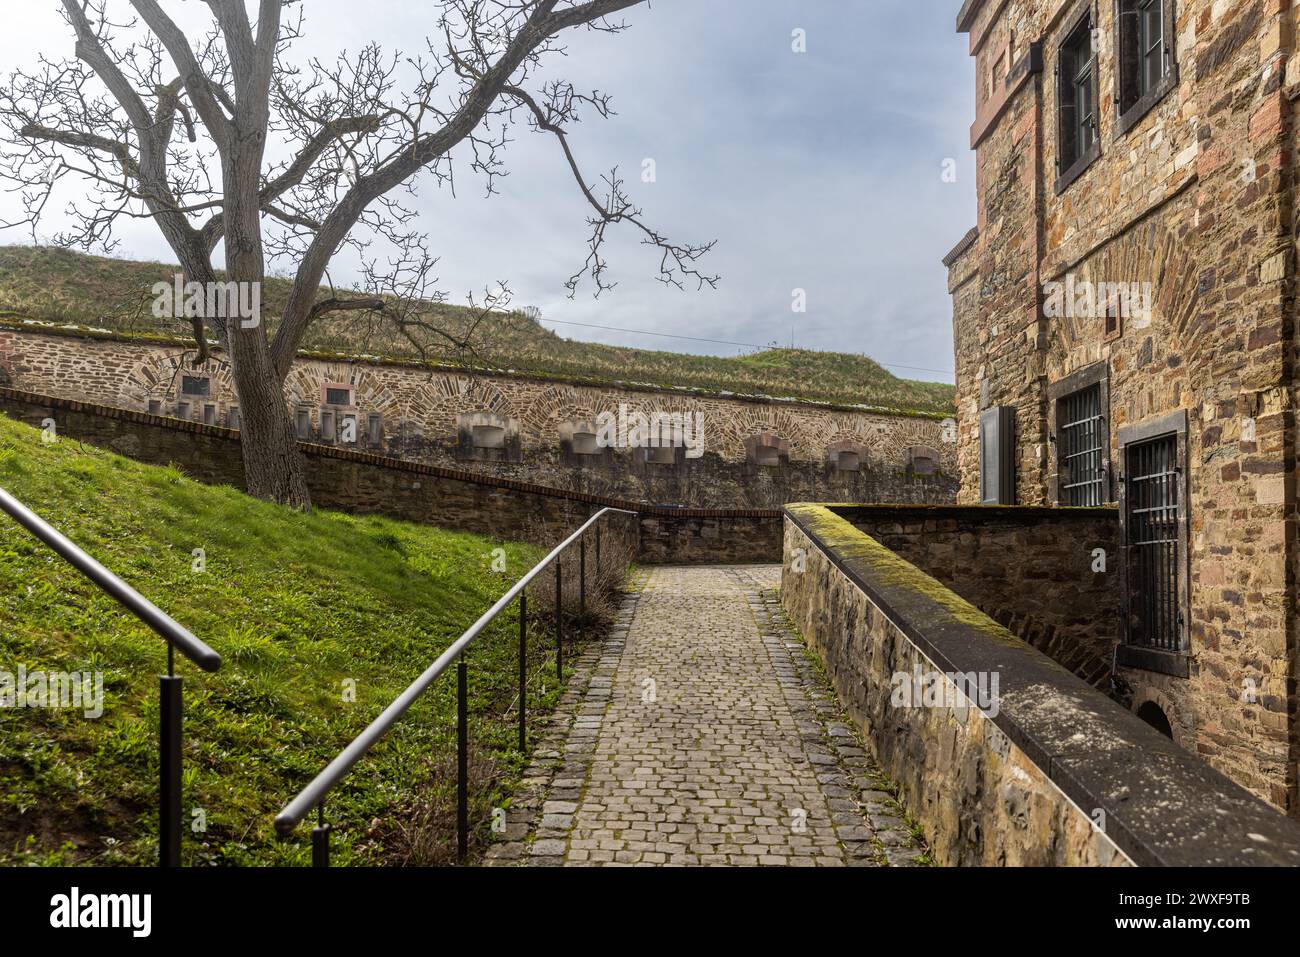 Festung Ehrenbreitstein in Koblenz an einem hellen Frühlingstag Stockfoto